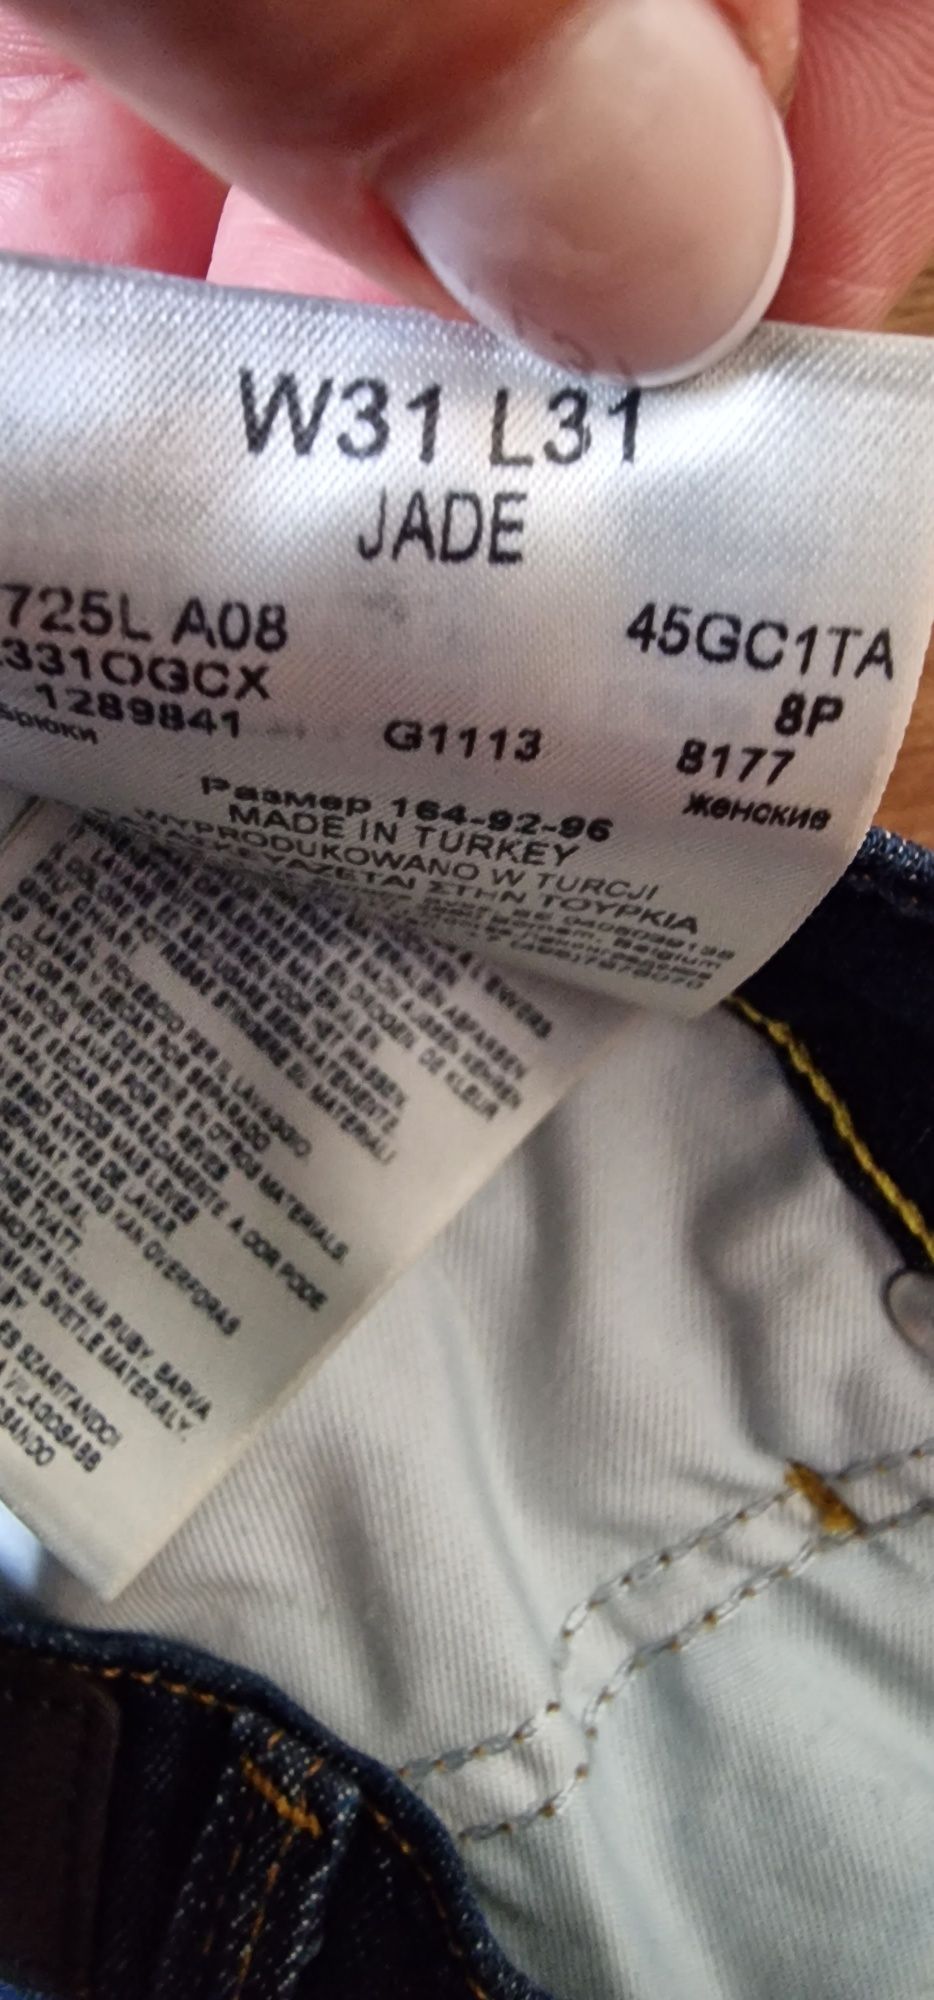 LEE Jade W31 L31  dżinsy jeans spodnie damskie